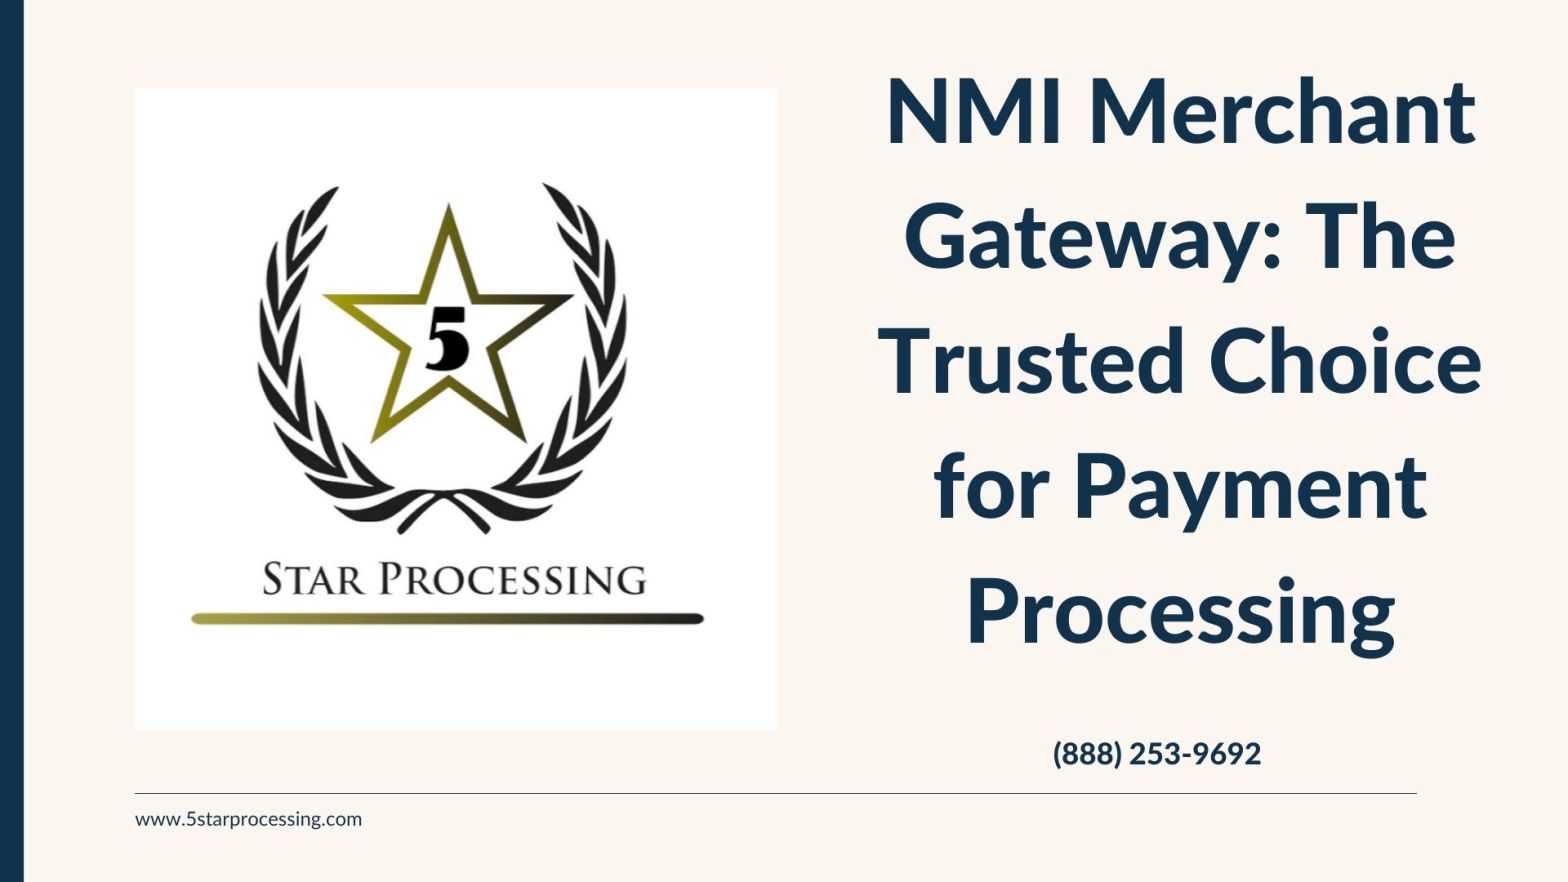 NMI Merchant Gateway